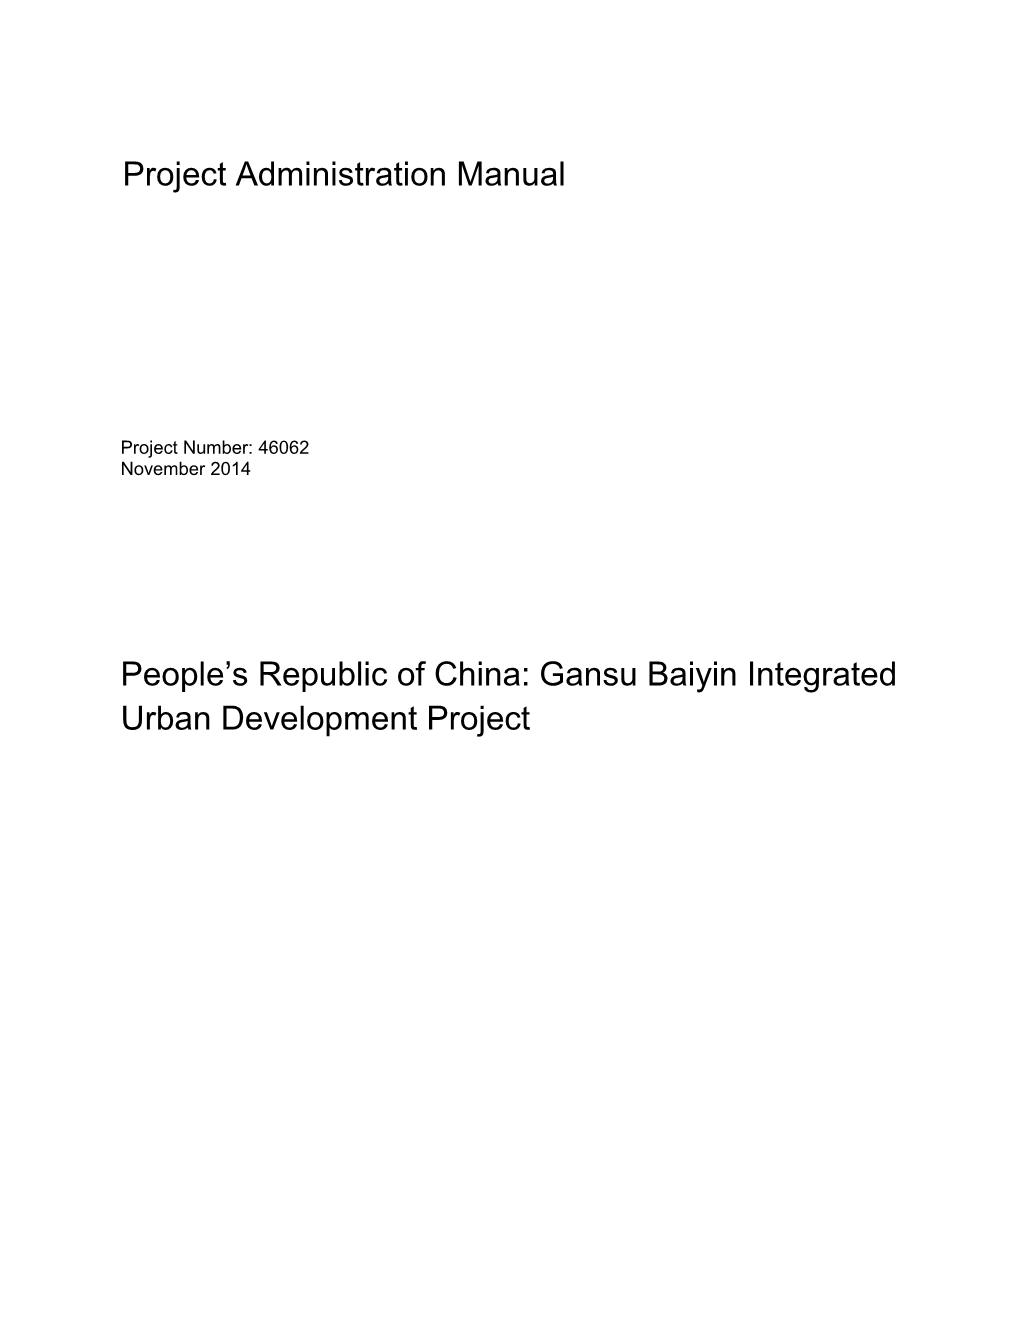 Gansu Baiyin Integrated Urban Development Project